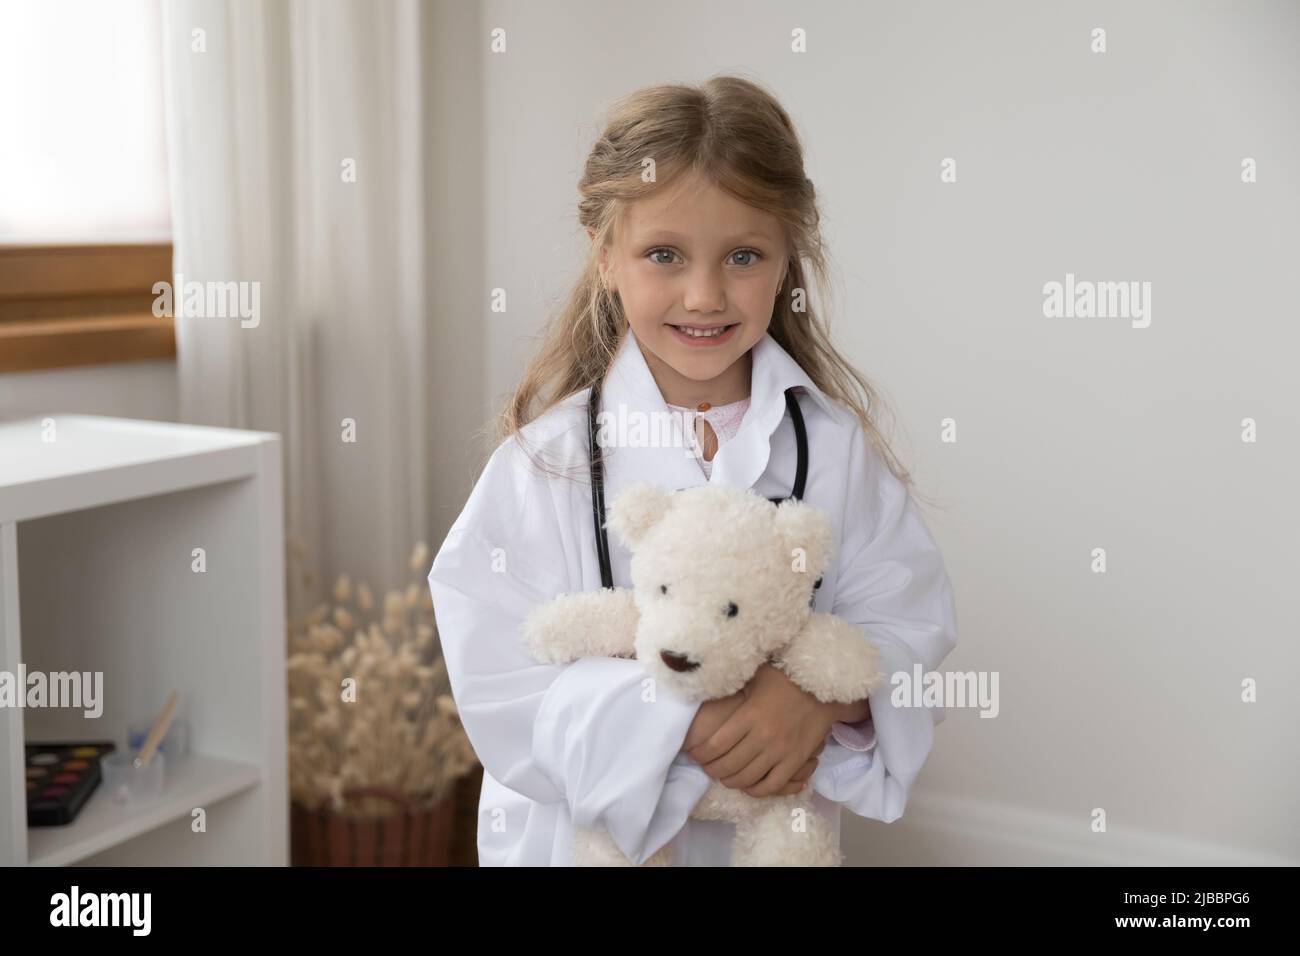 Bambina in uniforme tenendo l'orso giocattolo guardare la macchina fotografica Foto Stock